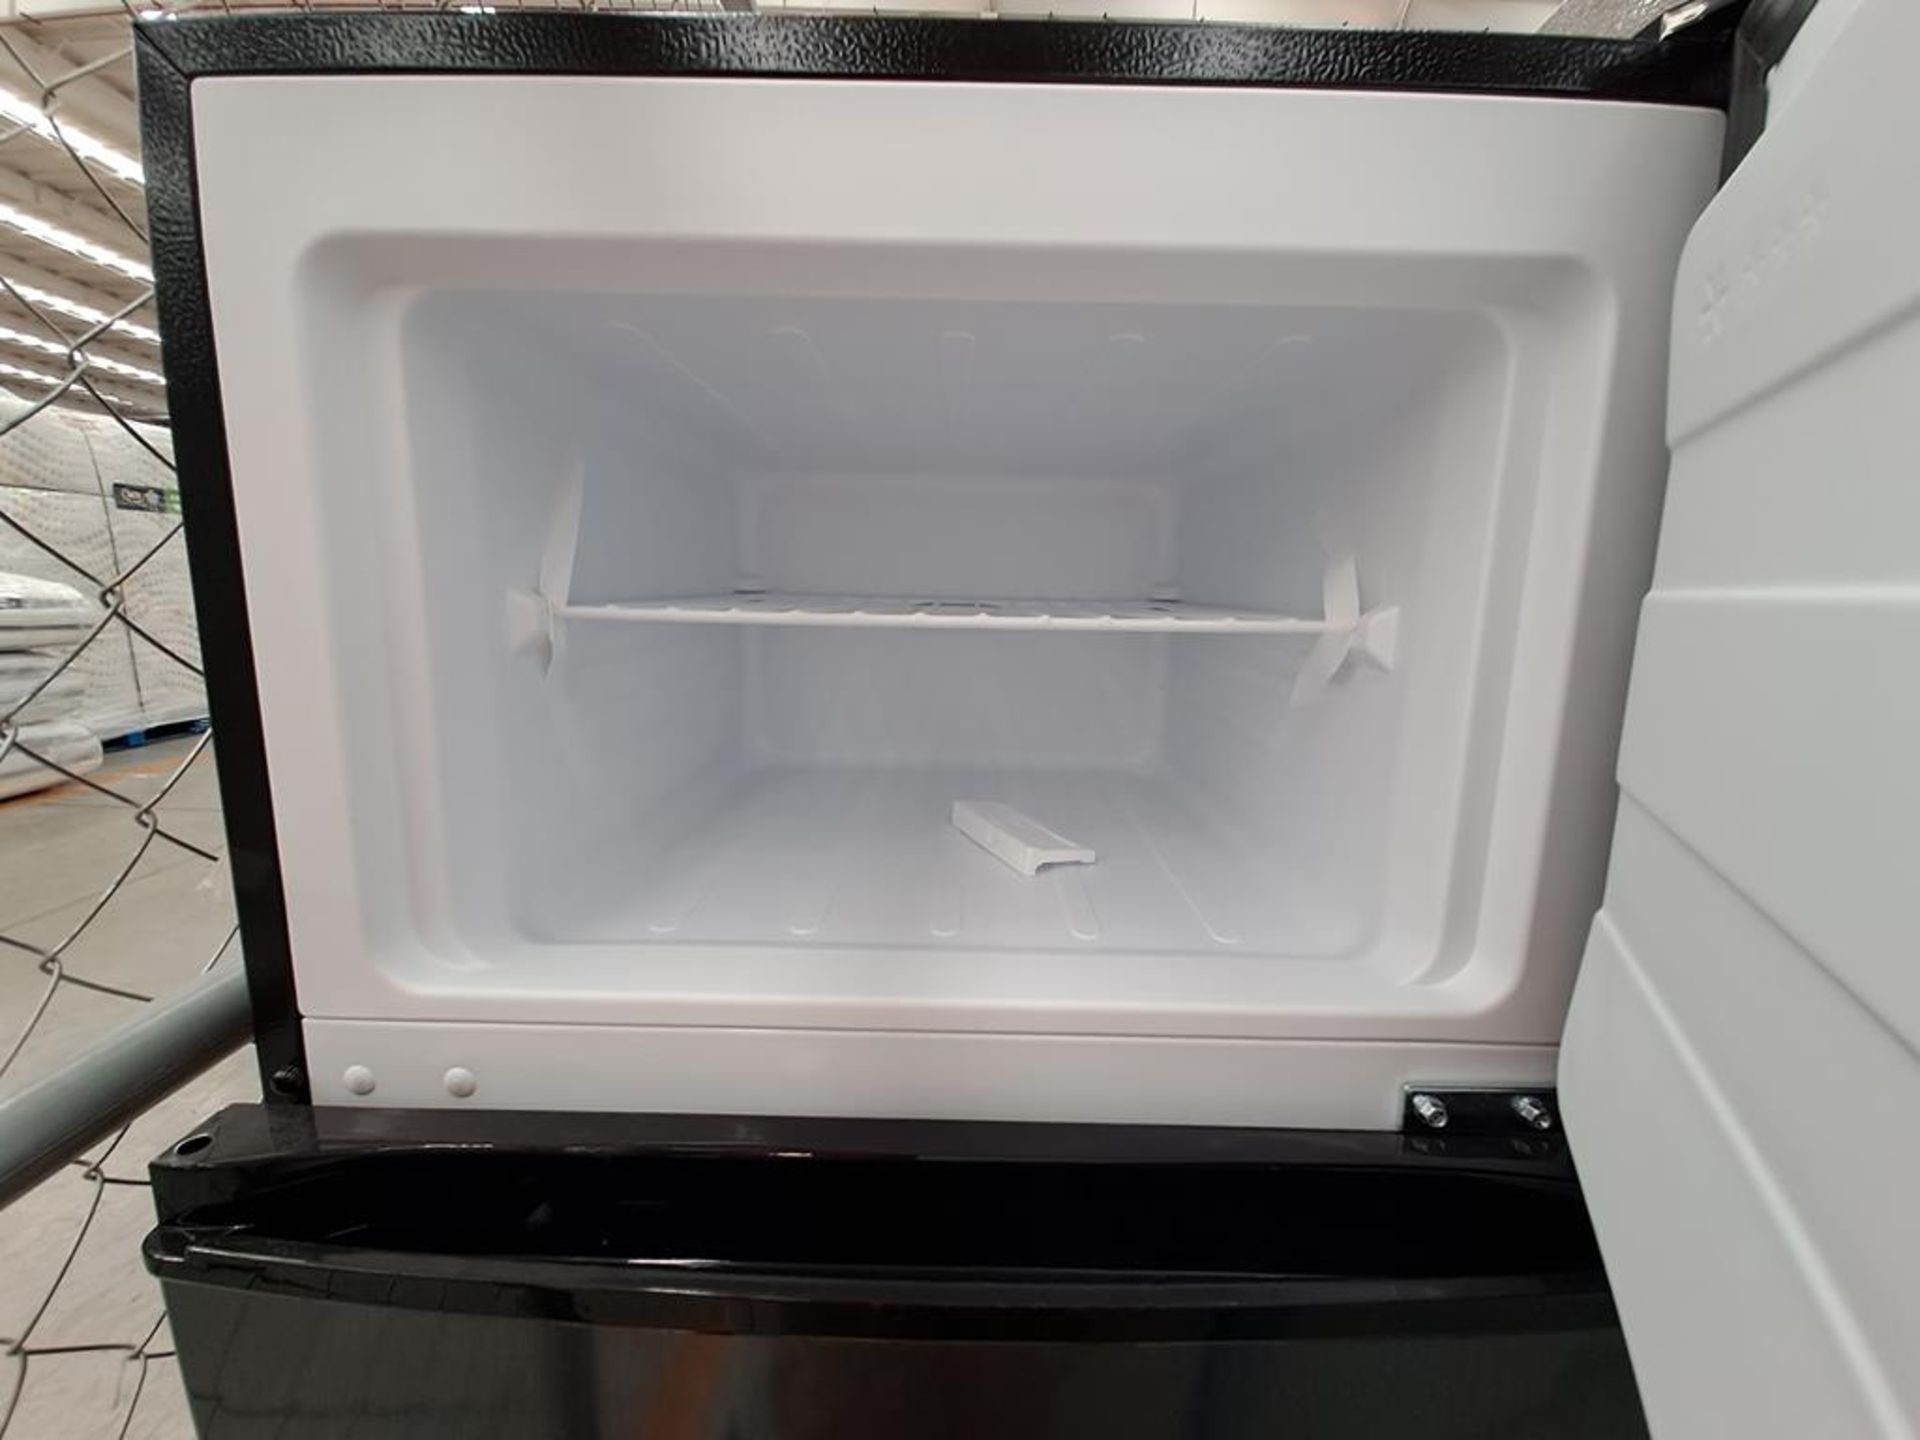 (Equipo nuevo) Lote de 2 refrigeradores contiene: 1 refrigerador Marca WHIRLPOOL, Modelo WT1231D, S - Image 7 of 9